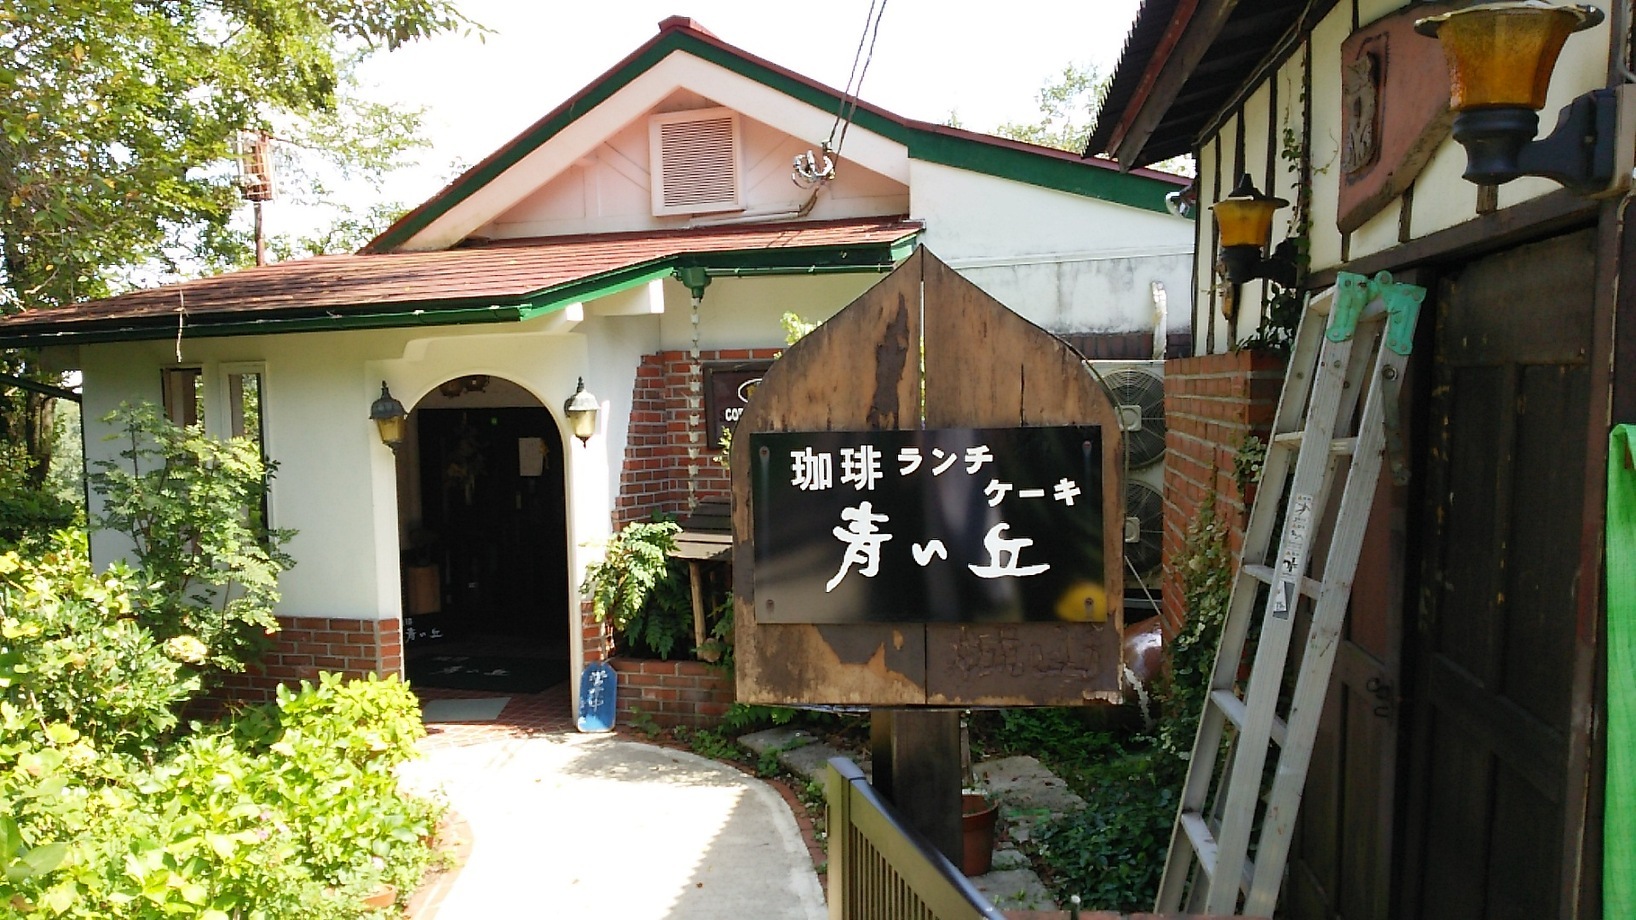 1人でも誰かと一緒でも 自宅のようにくつろげる 富山のお洒落カフェ14選 キナリノ